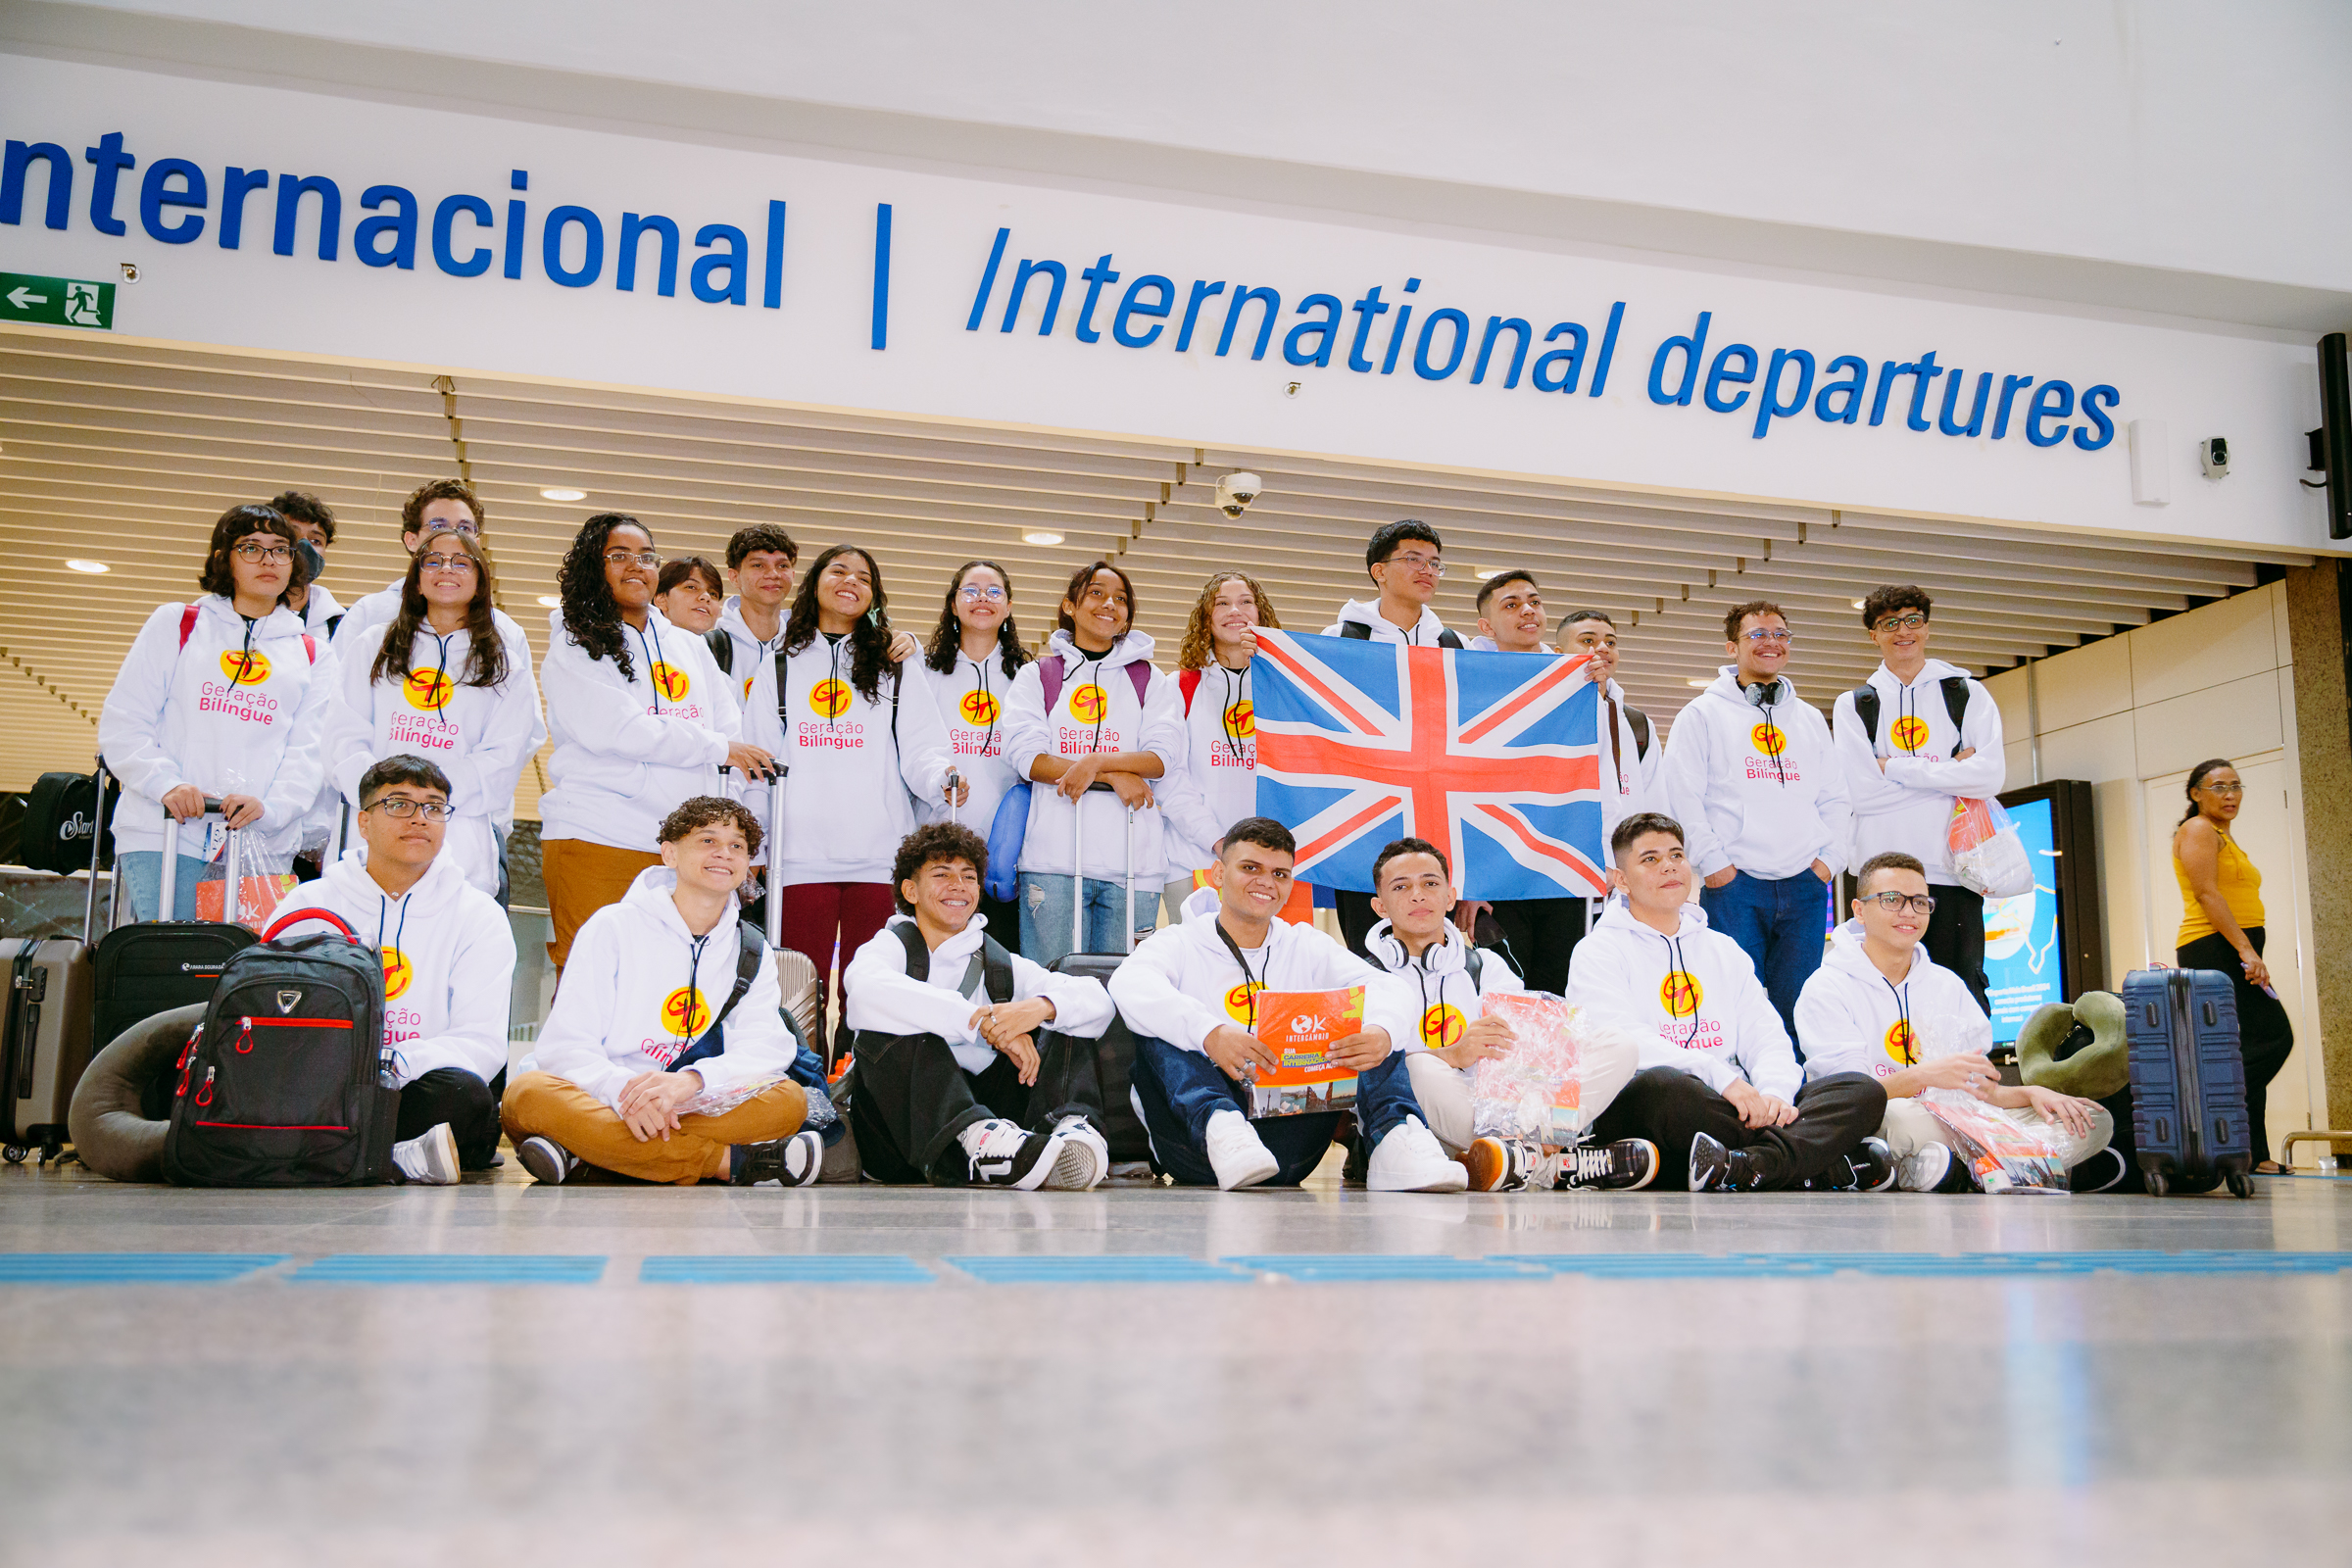 Grupo de jovens sorrindo em ala de embarque internacional do Aeroporto de Fortaleza.